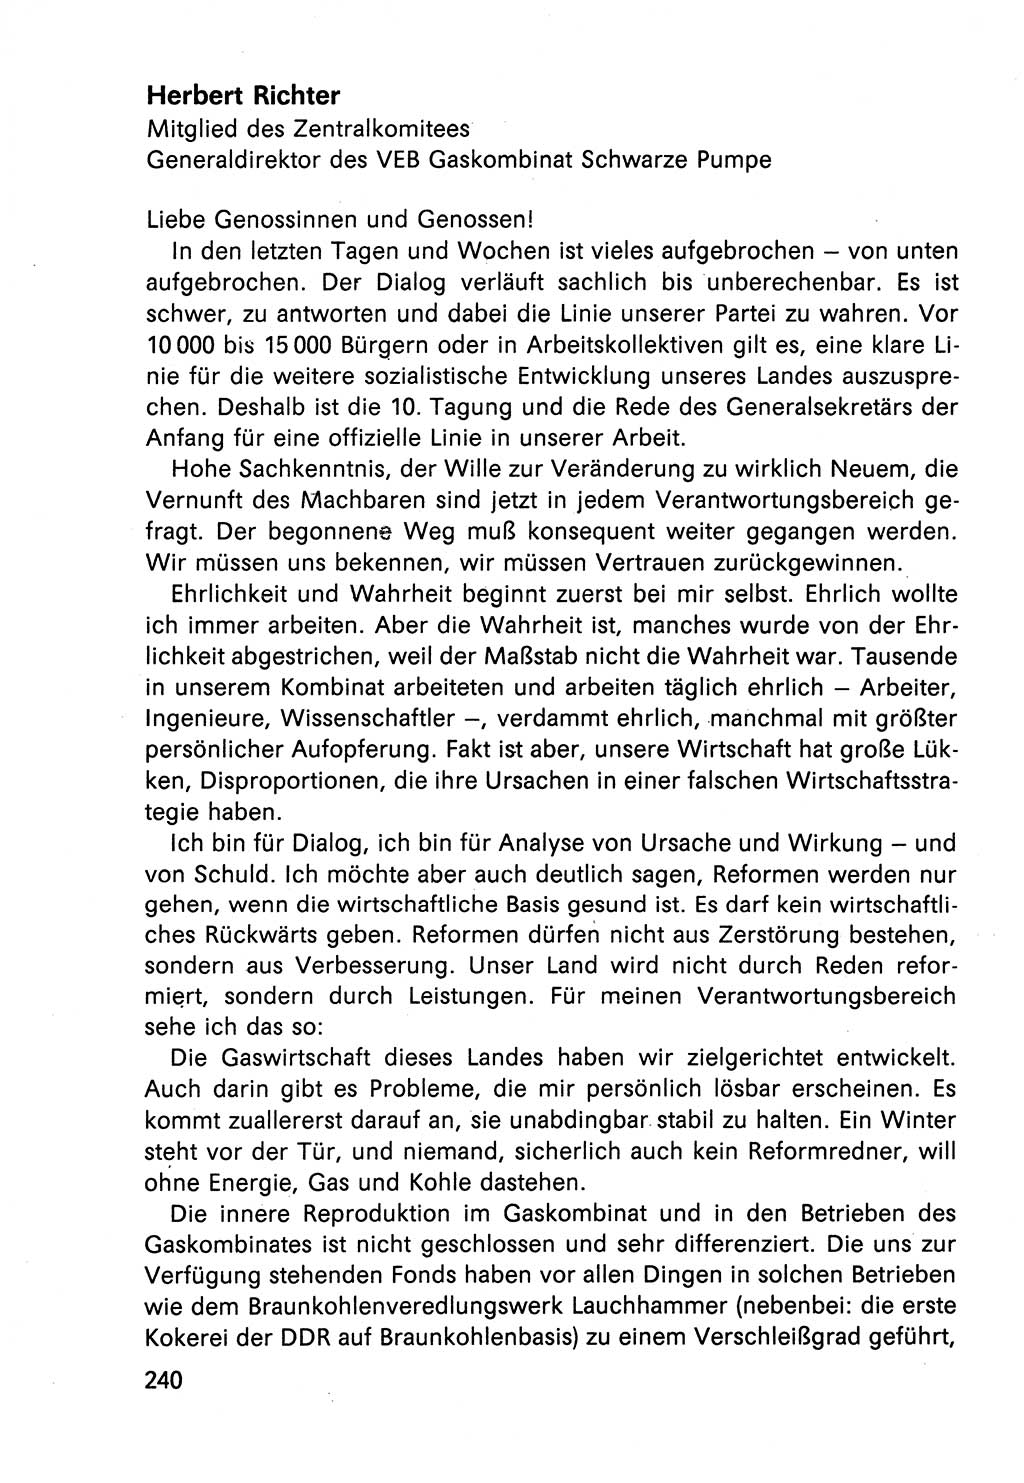 Diskussionsbeiträge, 10. Tagung des ZK (Zentralkomitee) der SED (Sozialistische Einheitspartei Deutschlands) [Deutsche Demokratische Republik (DDR)] 1989, Seite 240 (Disk.-Beitr. 10. Tg. ZK SED DDR 1989, S. 240)